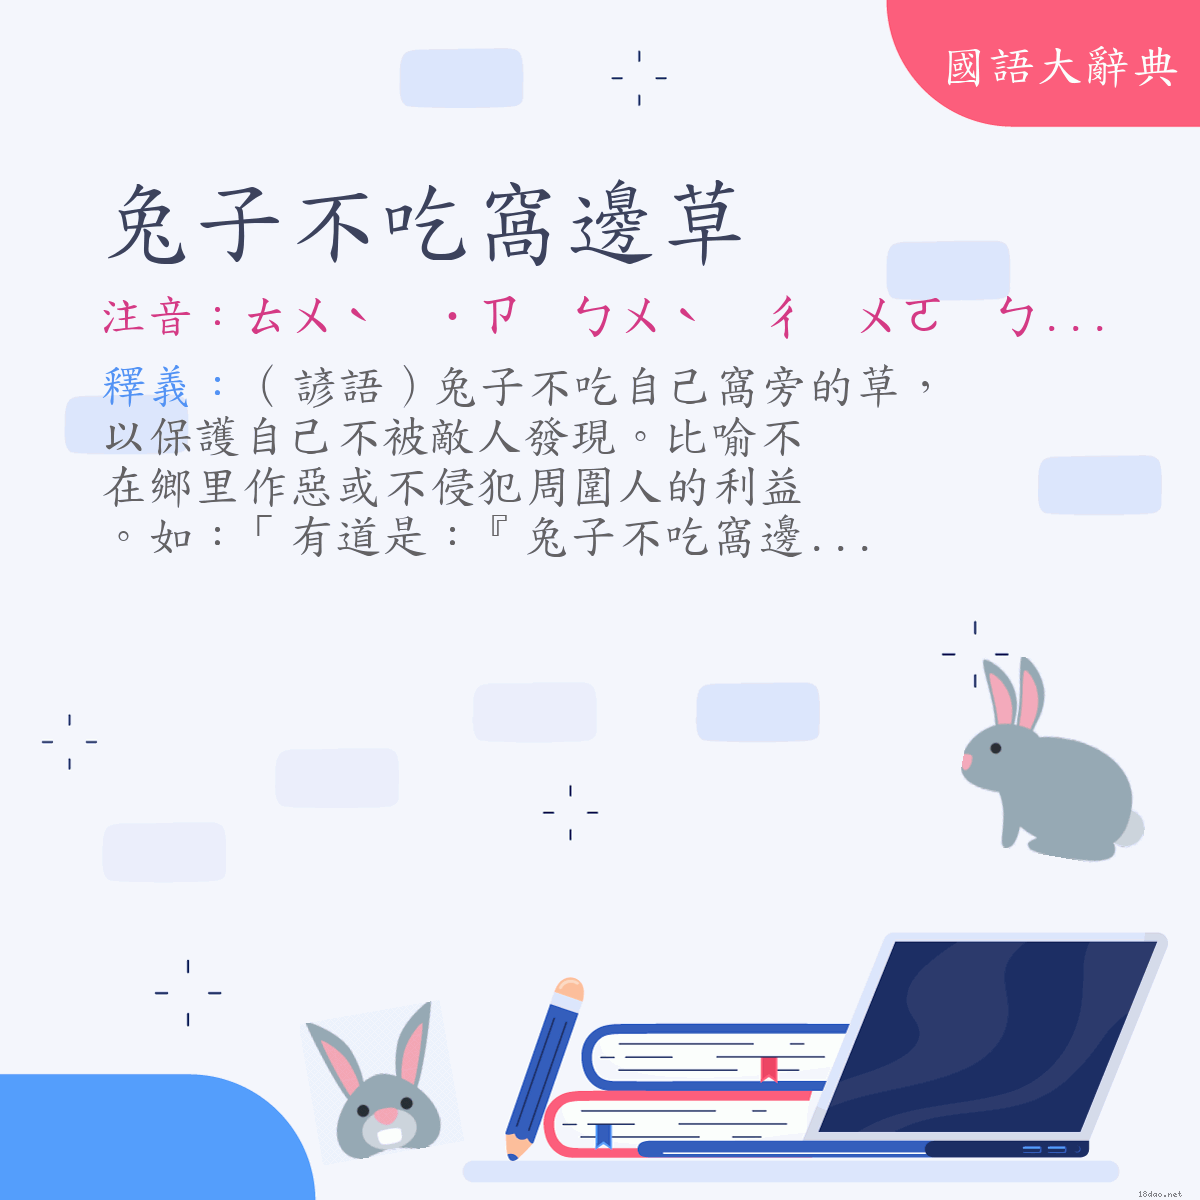 詞語:兔子不吃窩邊草 (注音:ㄊㄨˋ　˙ㄗ　ㄅㄨˋ　ㄔ　ㄨㄛ　ㄅㄧㄢ　ㄘㄠˇ)